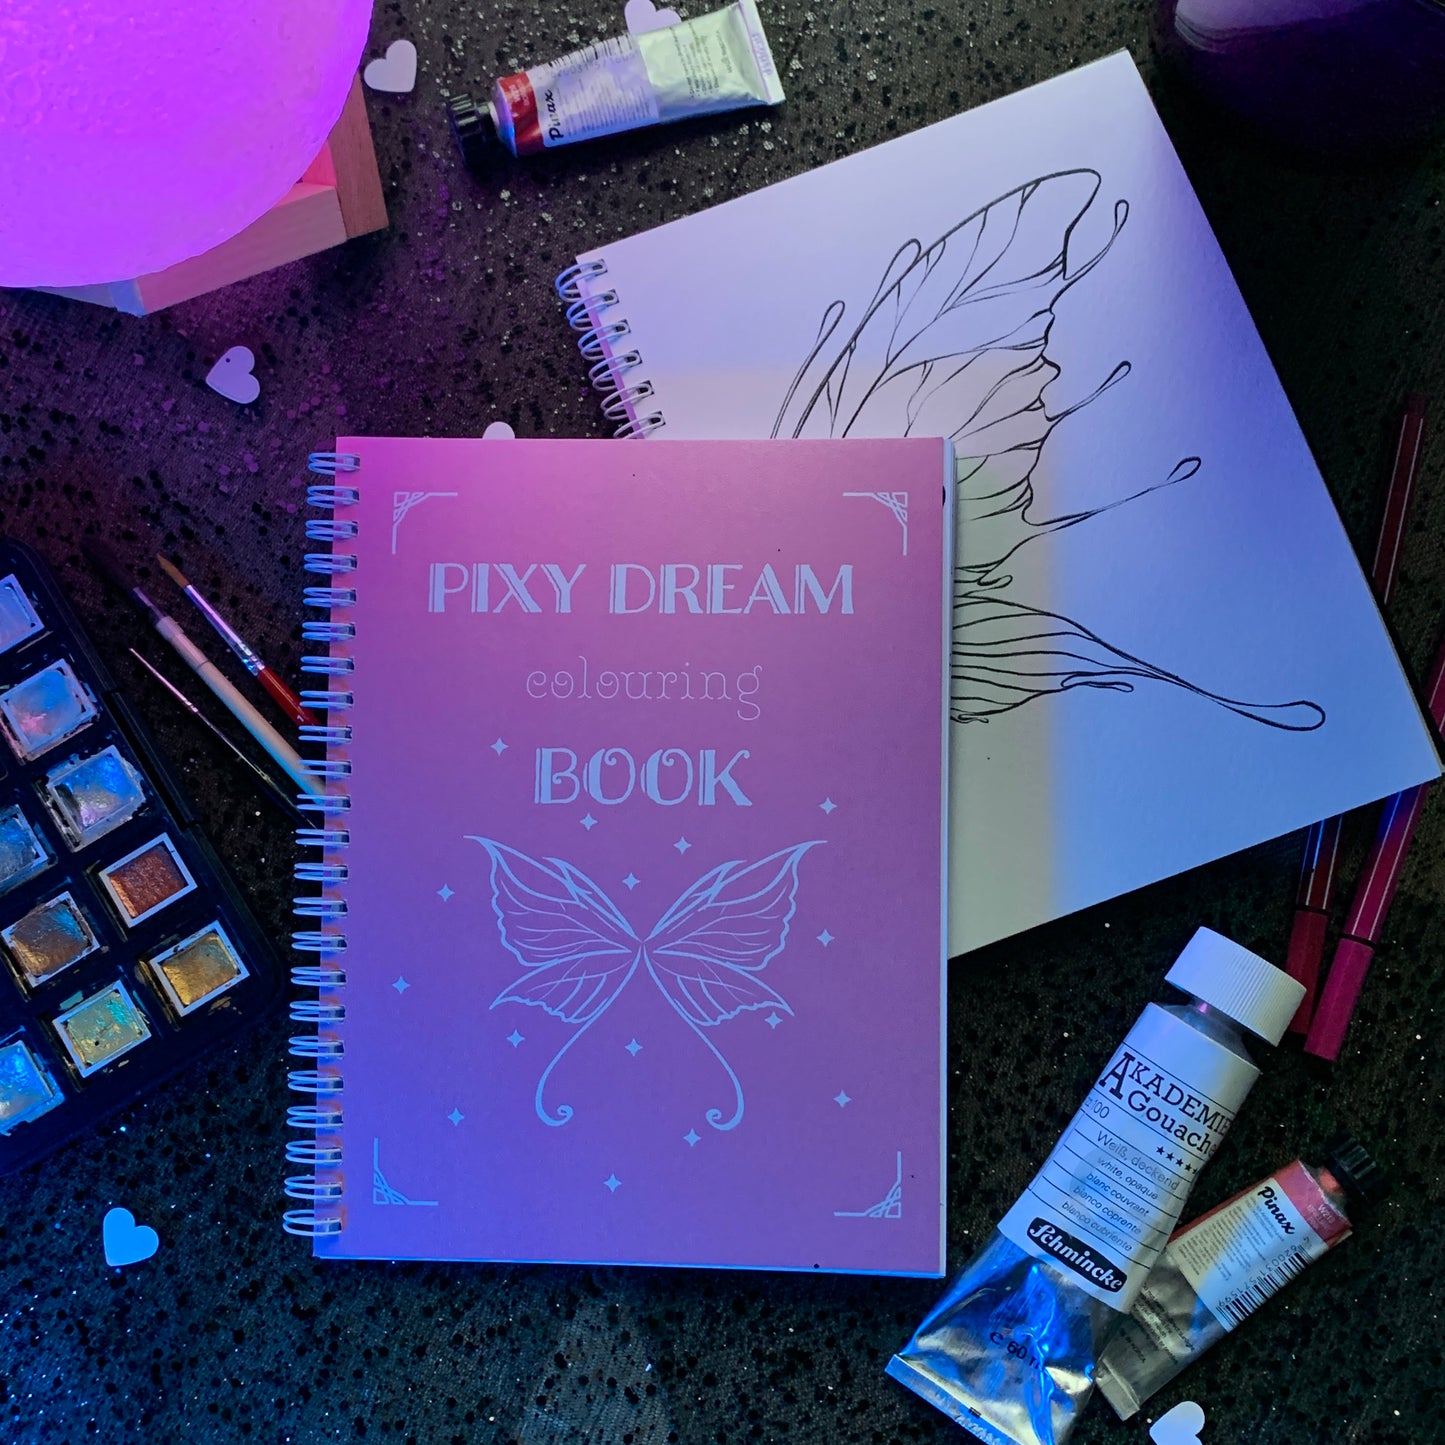 PIXY DREAM colouring book